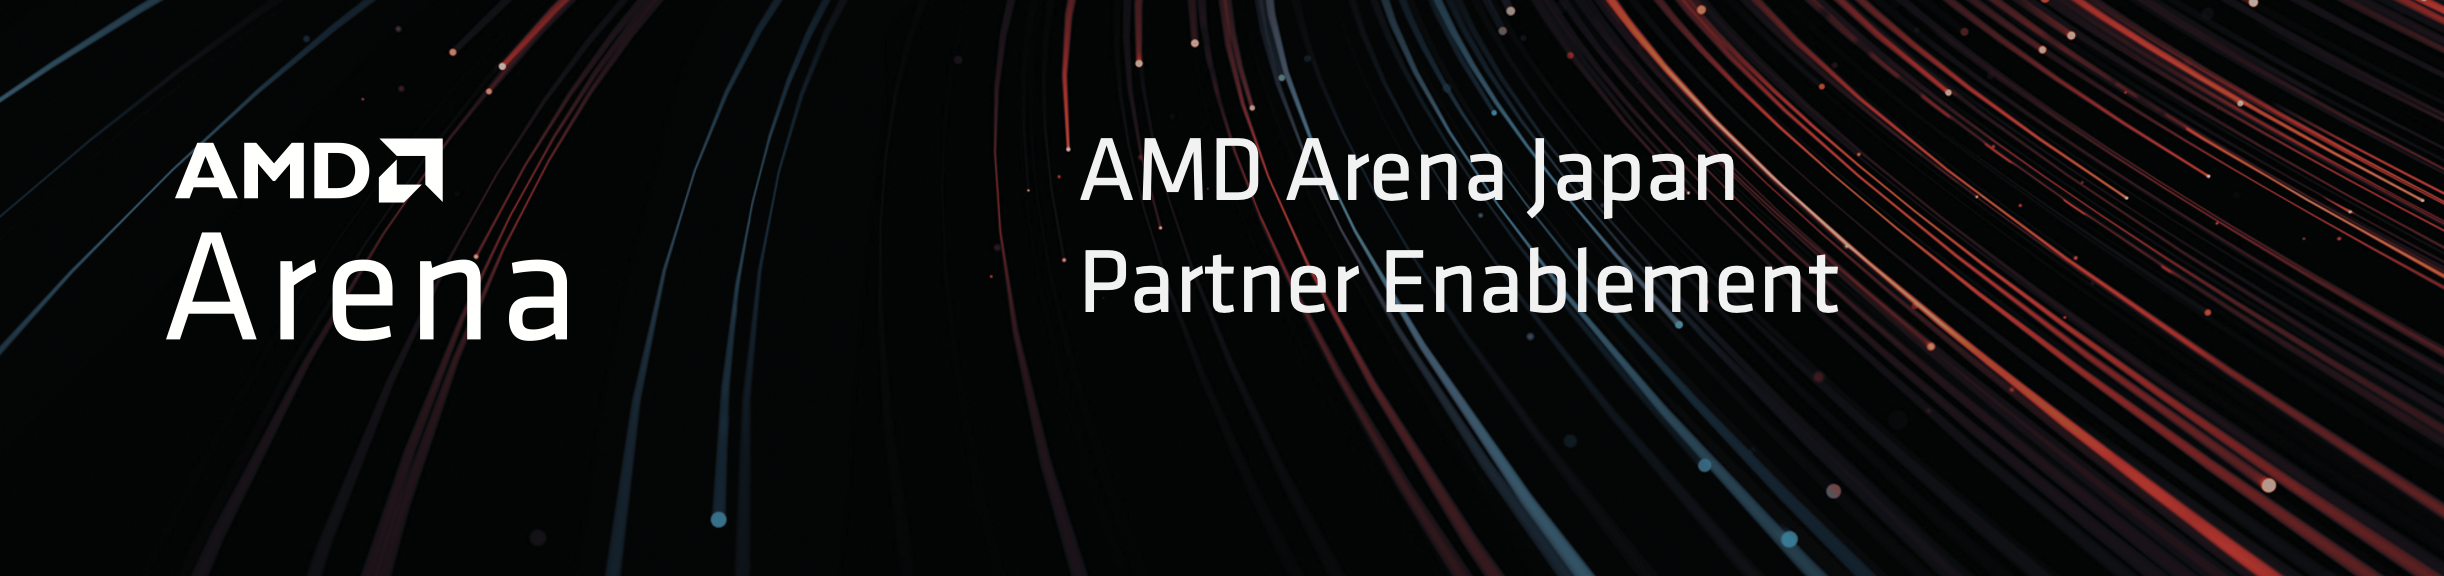 AMD Arena AMD Arena Japan Partner Enablement